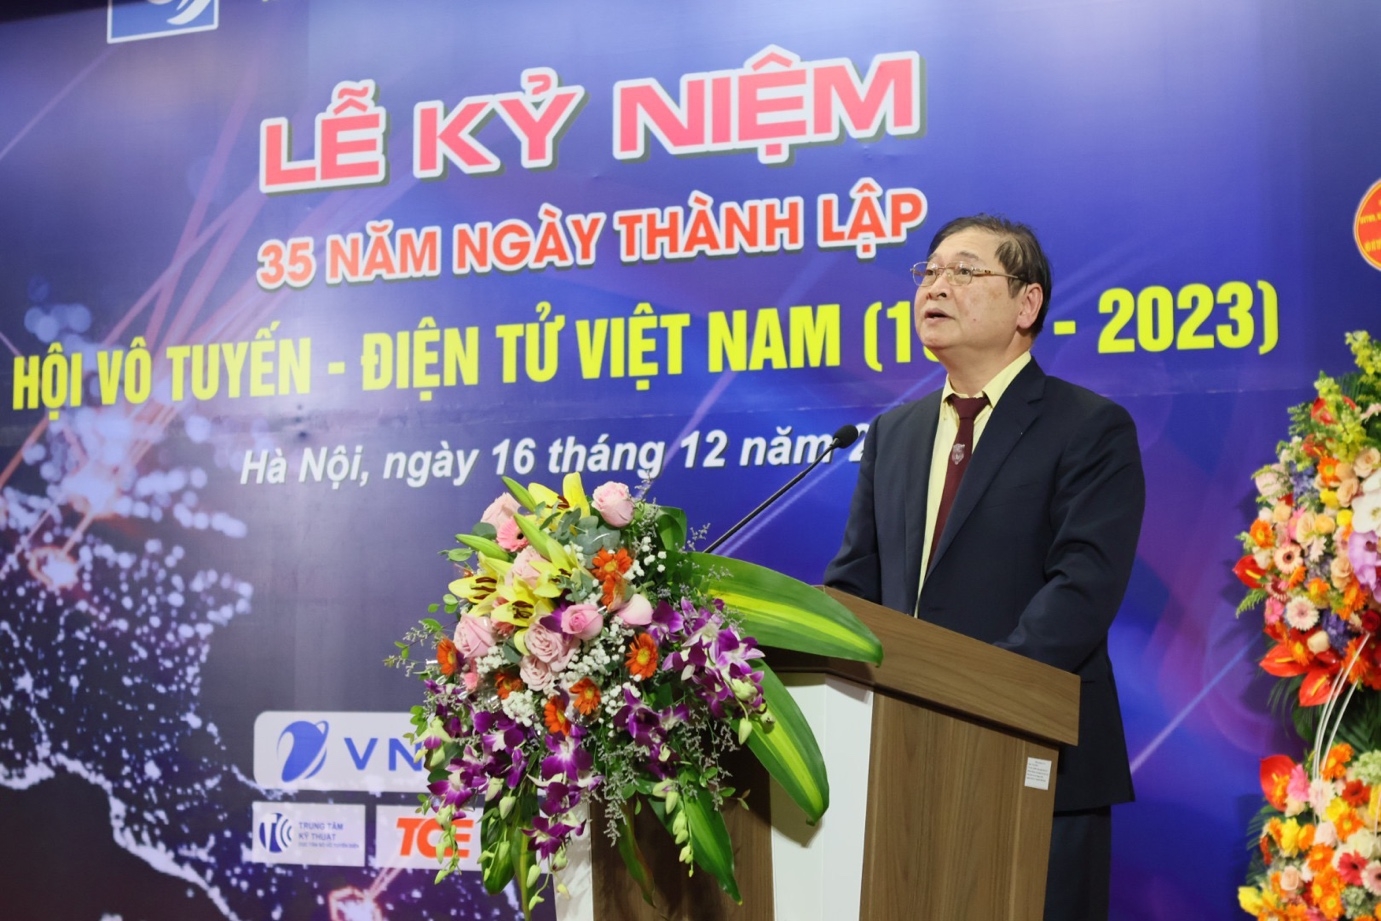 Hội Vô tuyến - Điện tử Việt Nam kỷ niệm 35 năm ngày thành lập